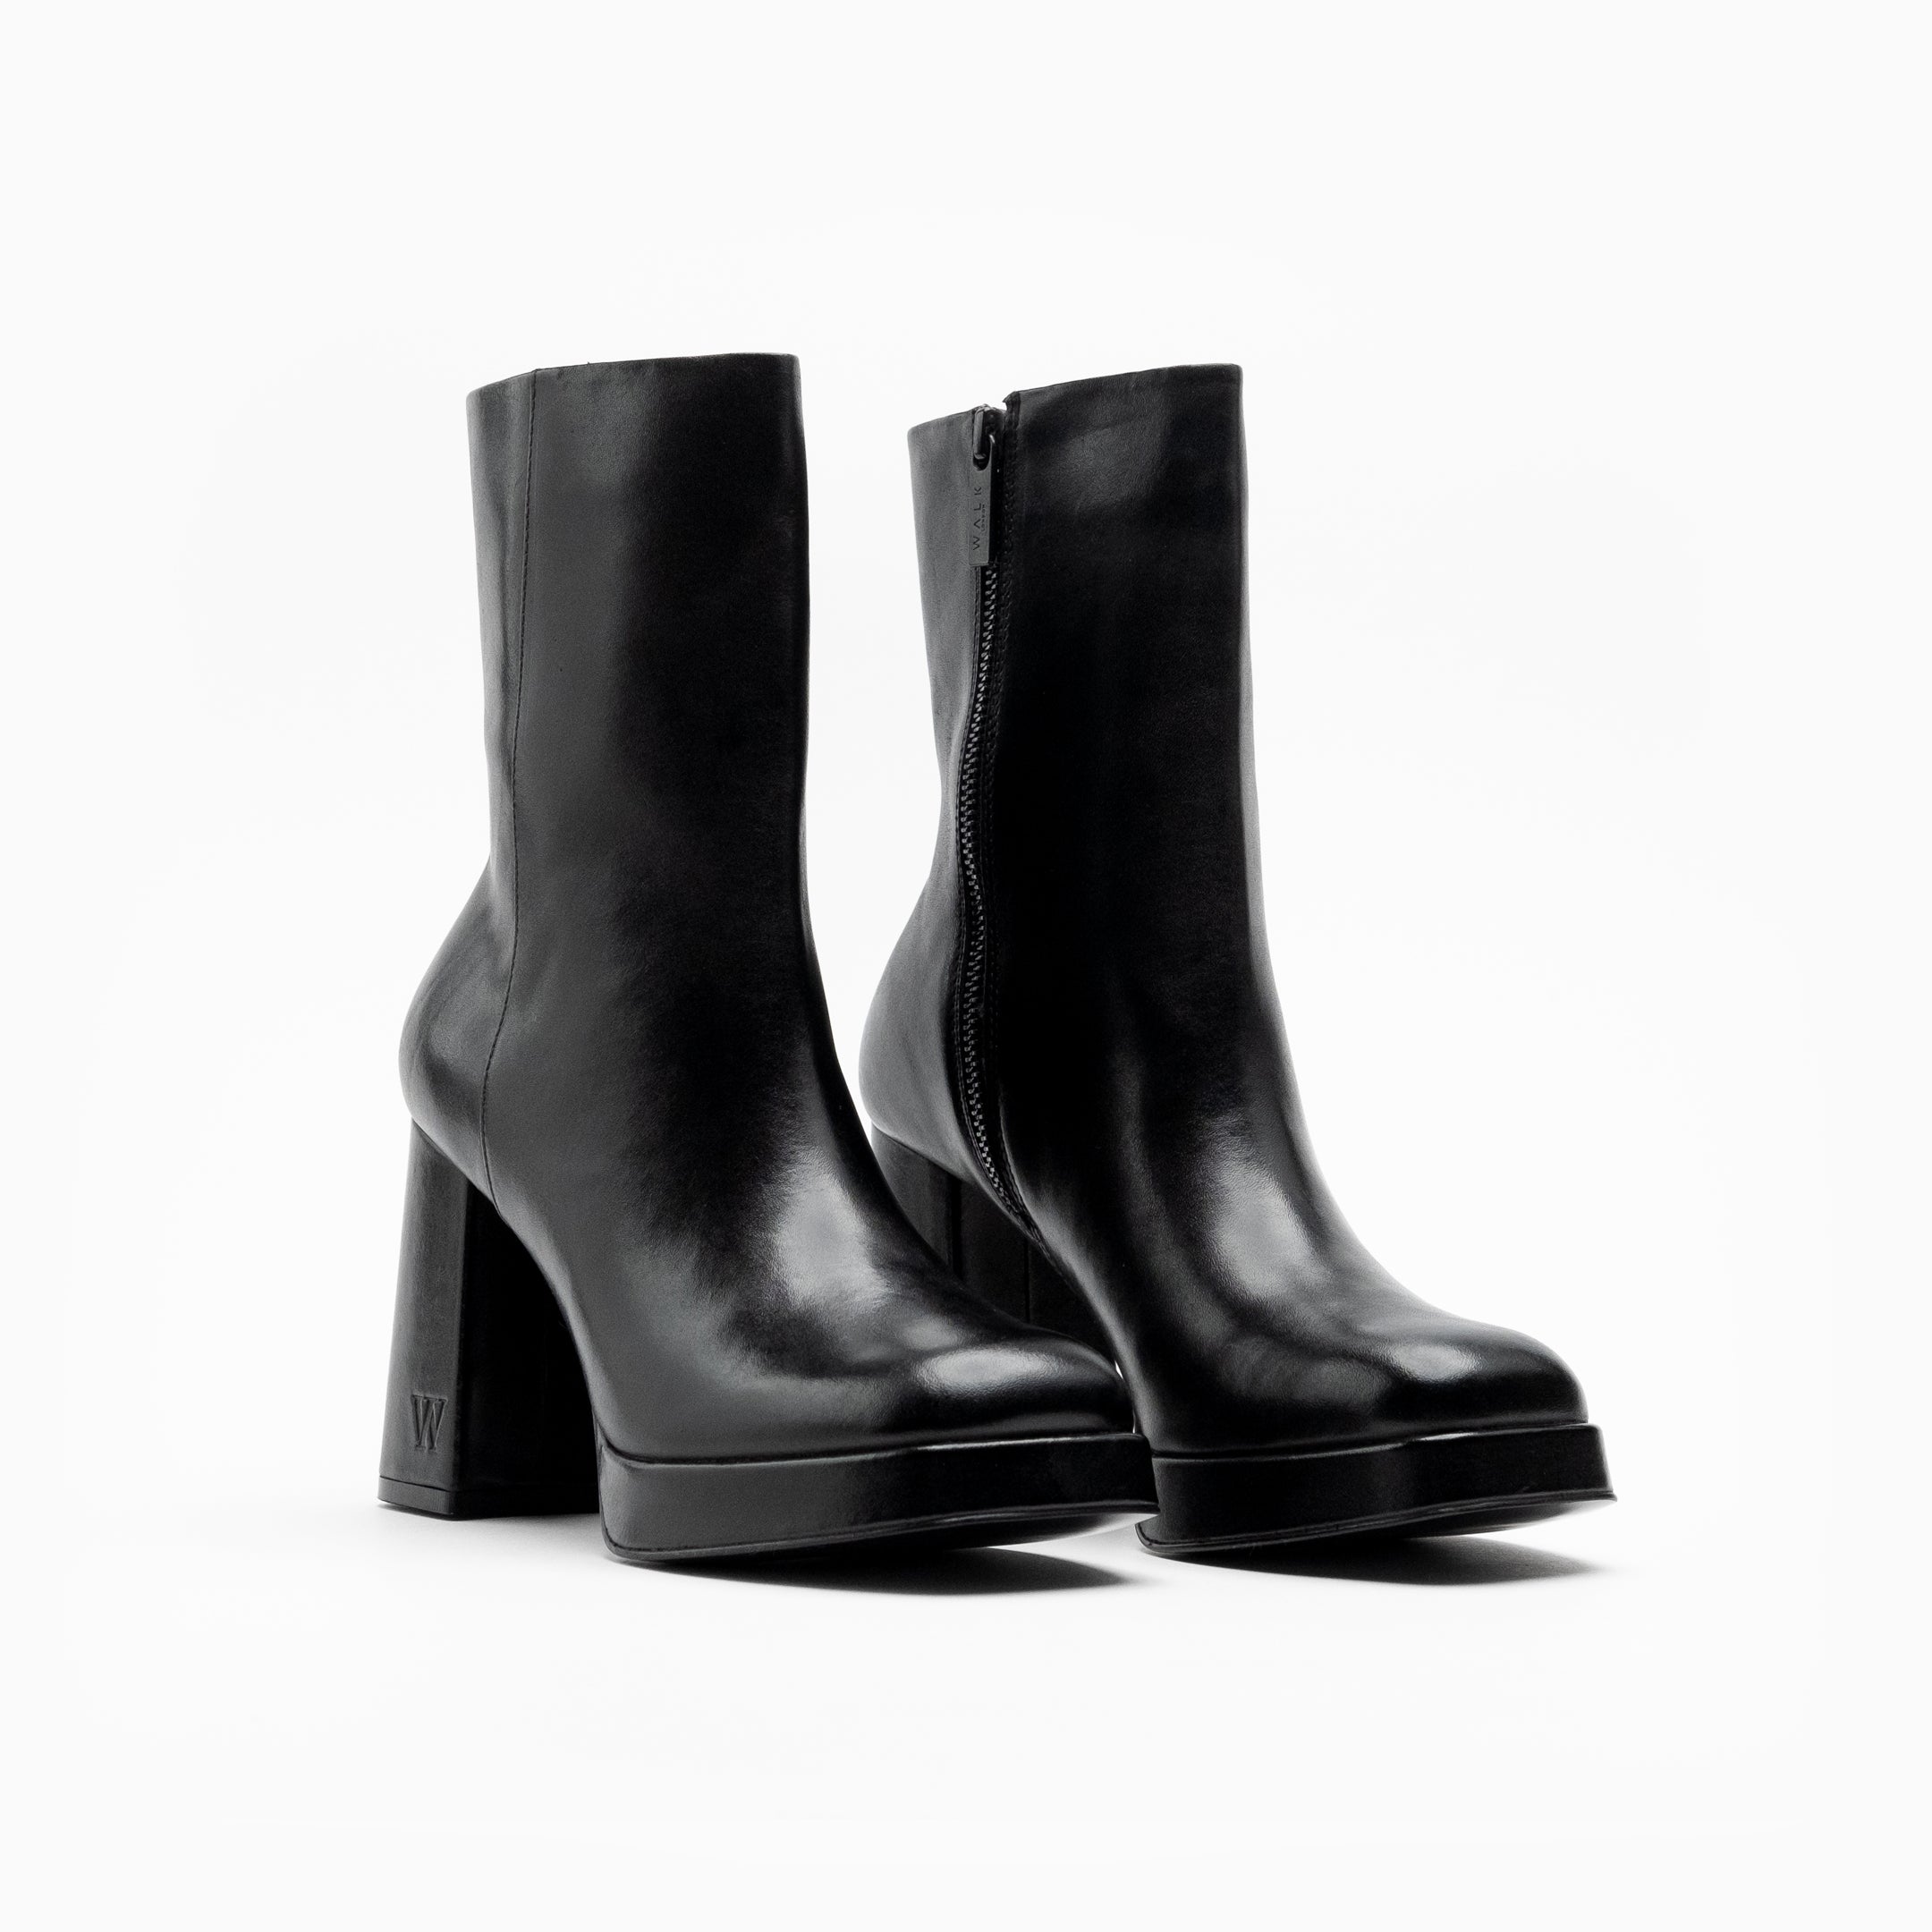 Walk London Women's Poppy Platform Boot in Black Leather